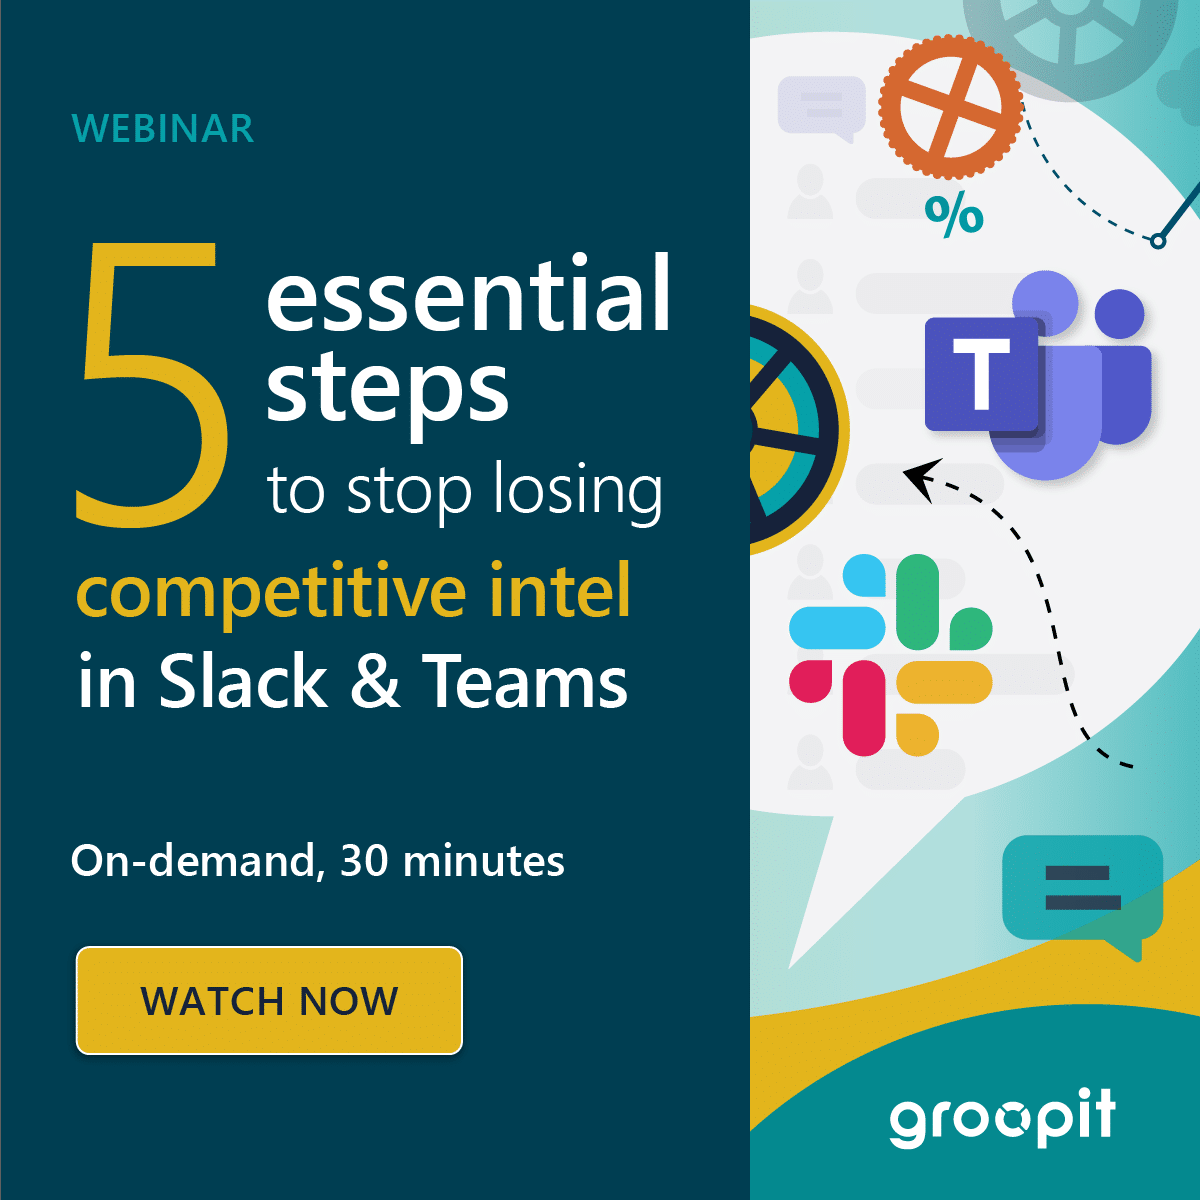 Webinar: 5 esstential steps to stop losing competitive Intel in Slack & Teams